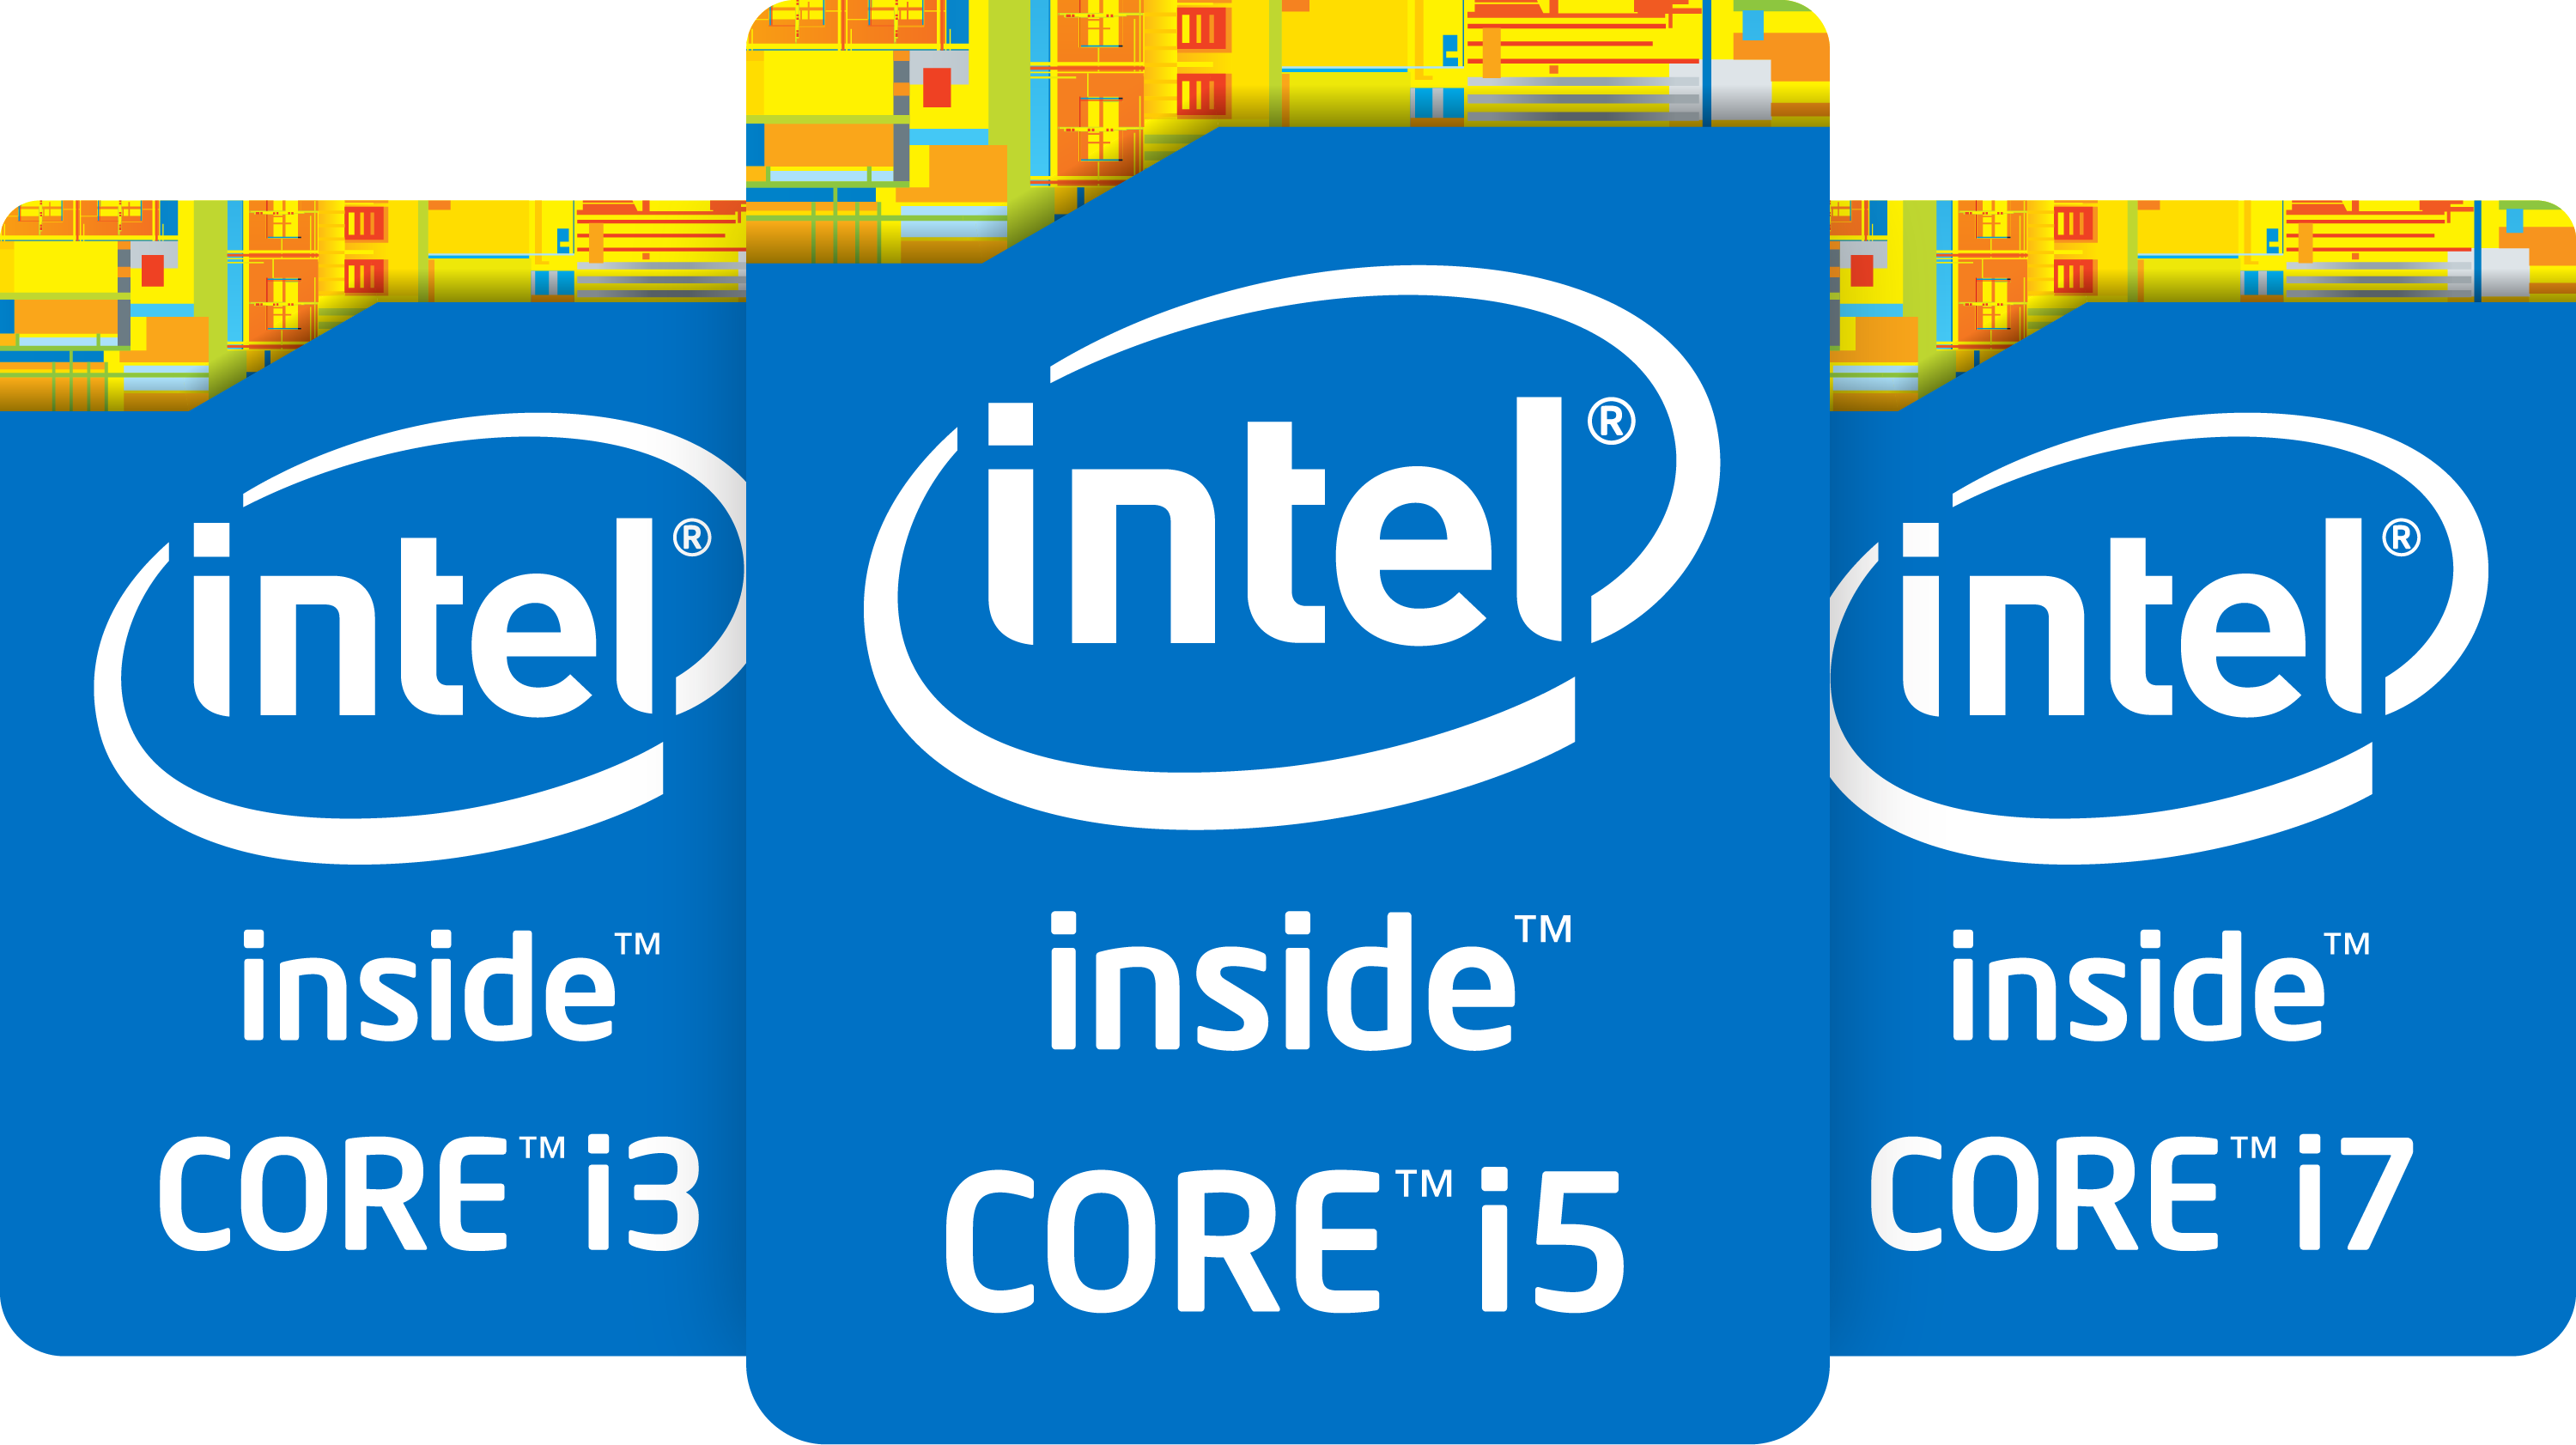 Процессор Intel Core i7 logo. Наклейка Intel Core i7. Intel Core i3 inside. Intel Core i5 logo.